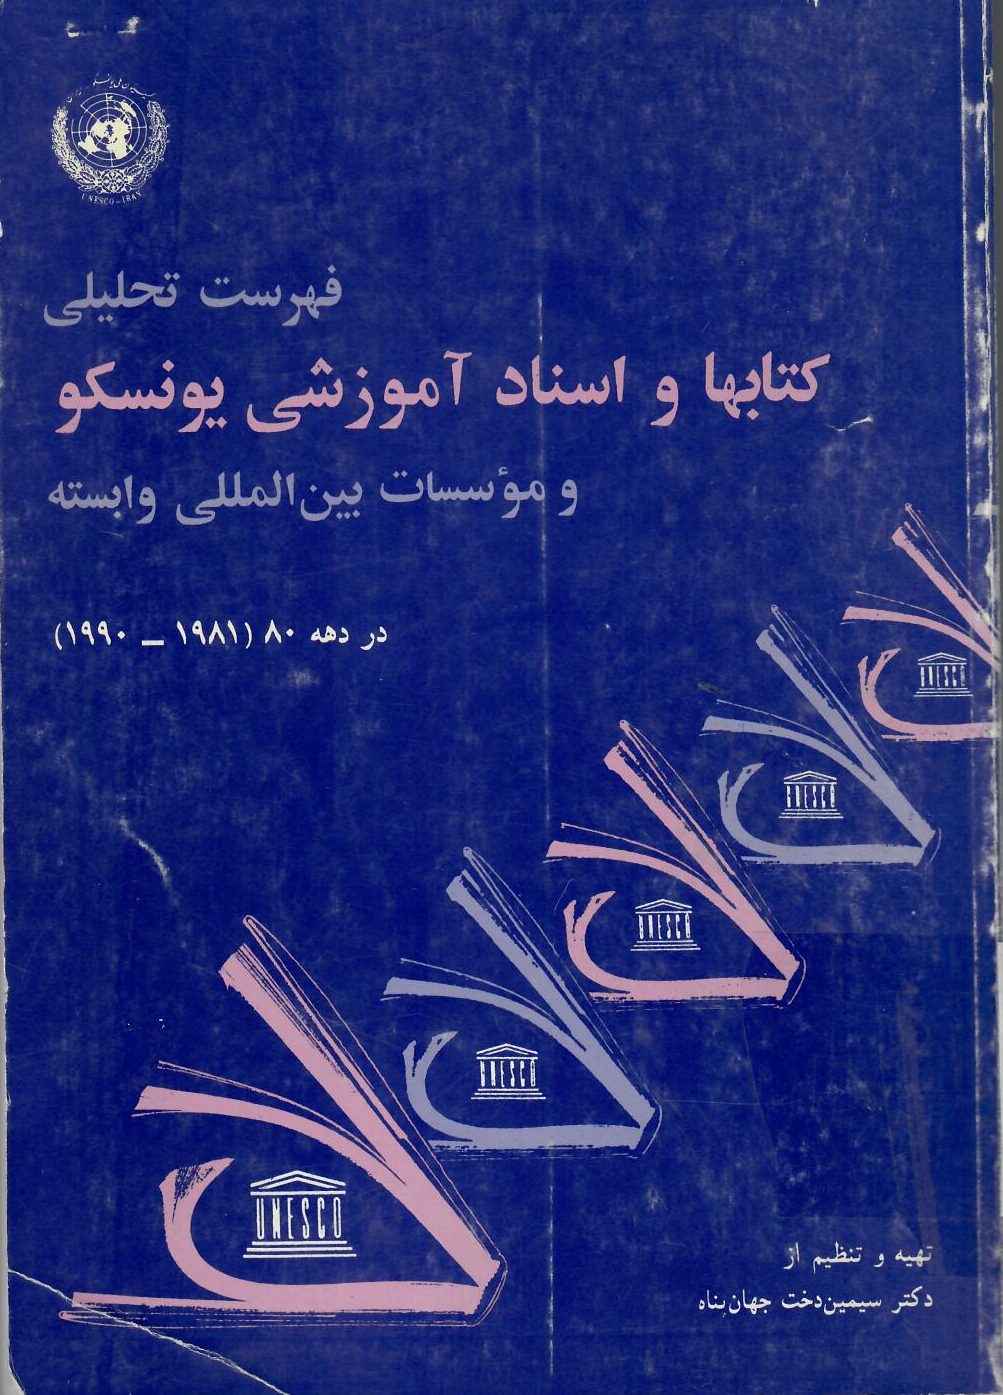 فهرست تحلیلی کتاب‌ها و اسناد آموزشی یونسکو و موسسات بین المللی وابسته در دهه ۸۰ (۱۹۸۱-۱۹۹۰)